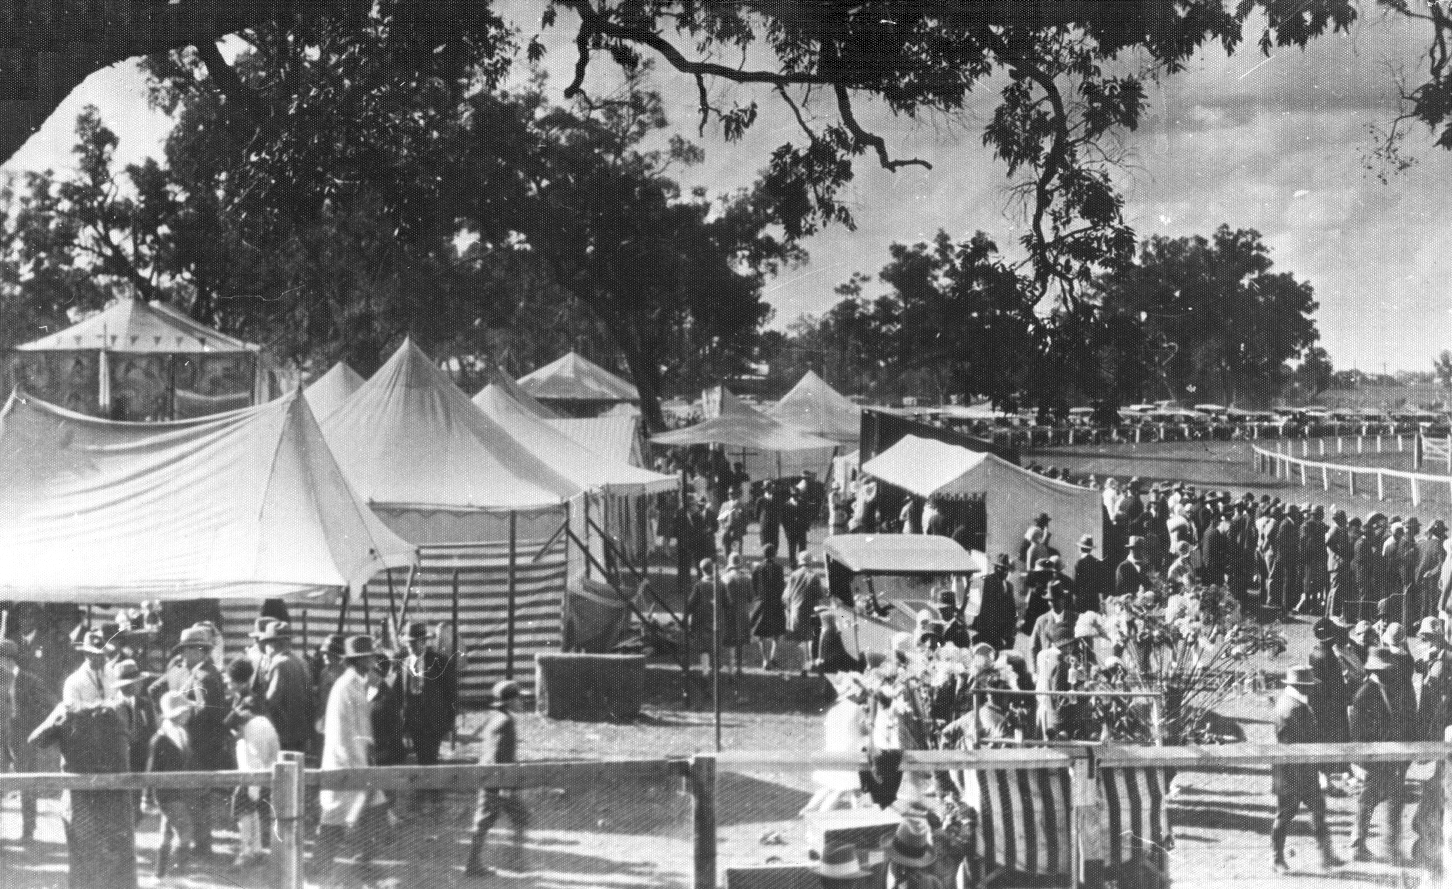 1920's Showground View